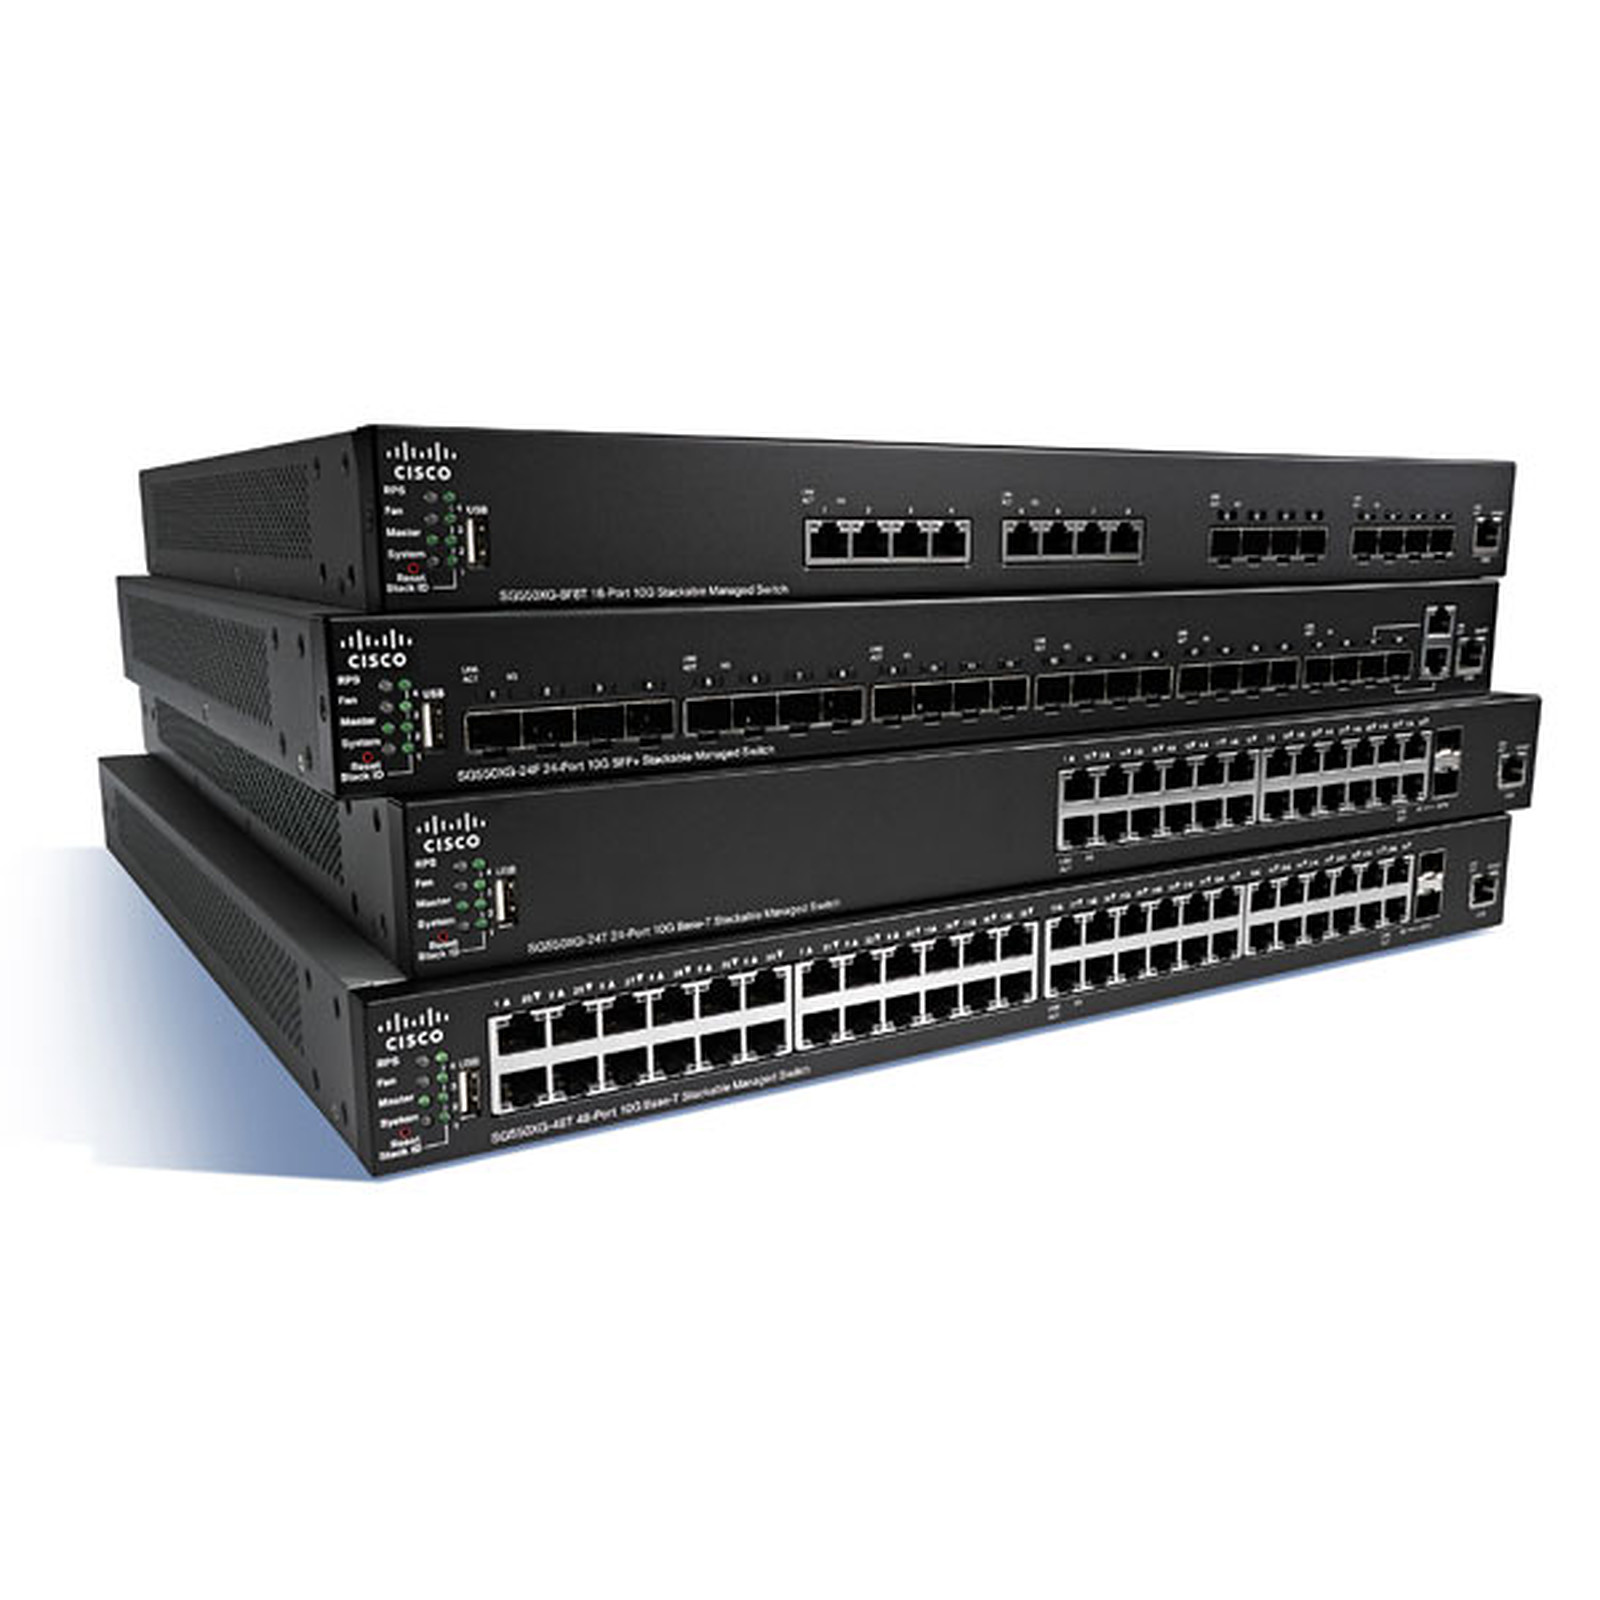 Cisco SG350X-24P - Switch Cisco Systems